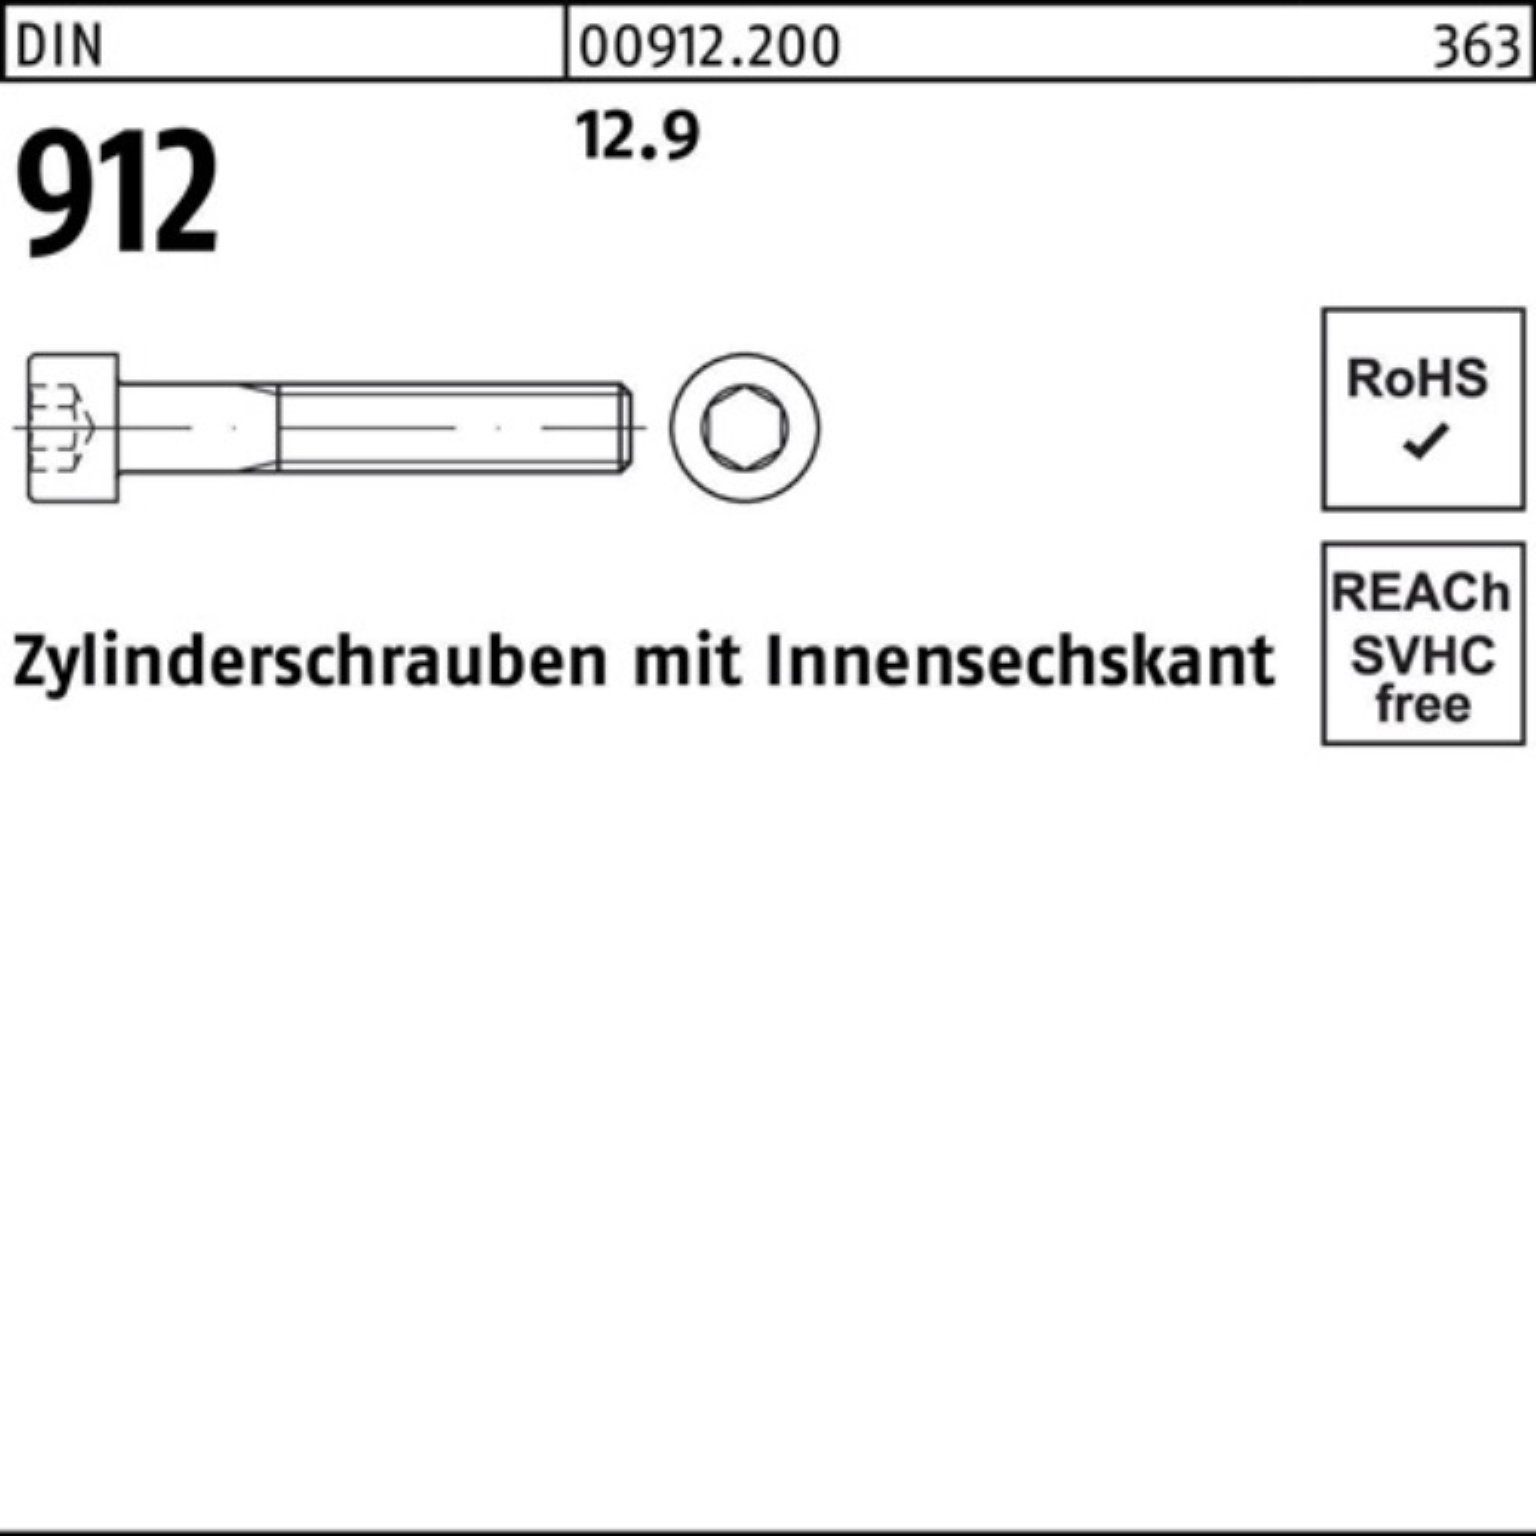 M4x Innen-6kt Pack Stück Zylinderschraube 912 DI 12.9 Reyher 5 Zylinderschraube DIN 100er 100